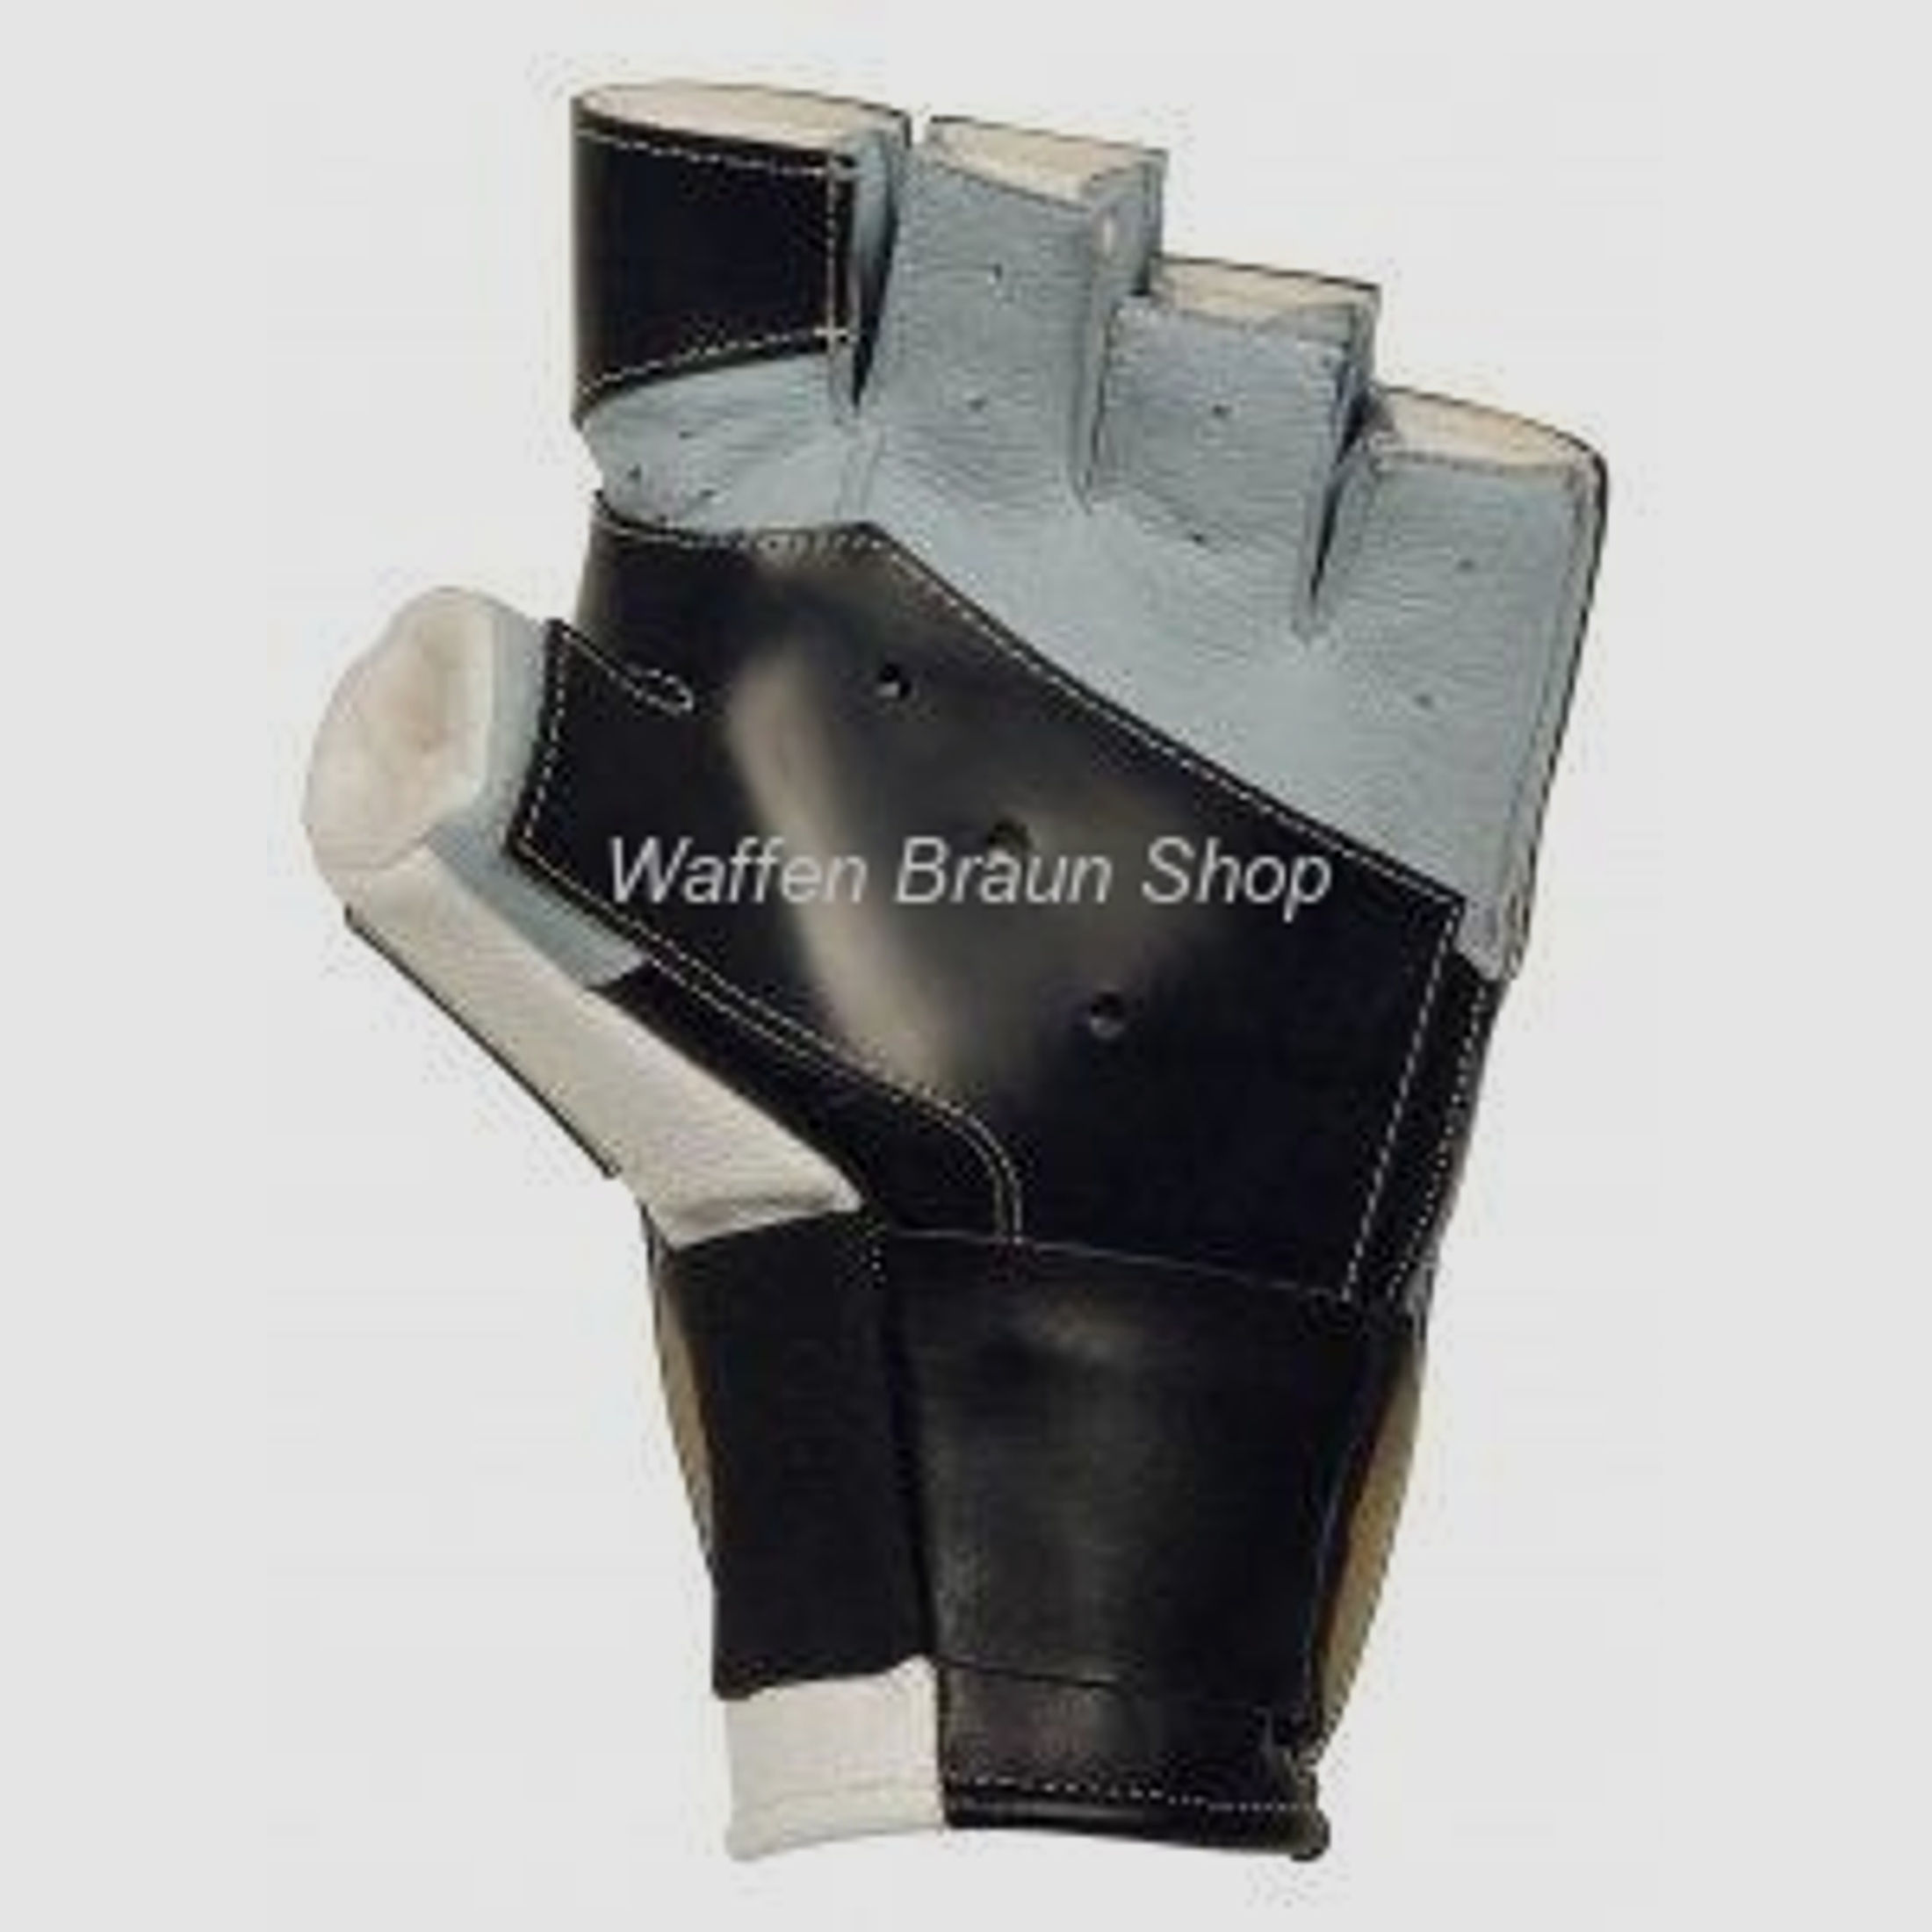 ahg- Match Offener 5-Finger-Handschuh Gr.M schwarzer Antirutschbelag.• Stretchband am Handgelenk.